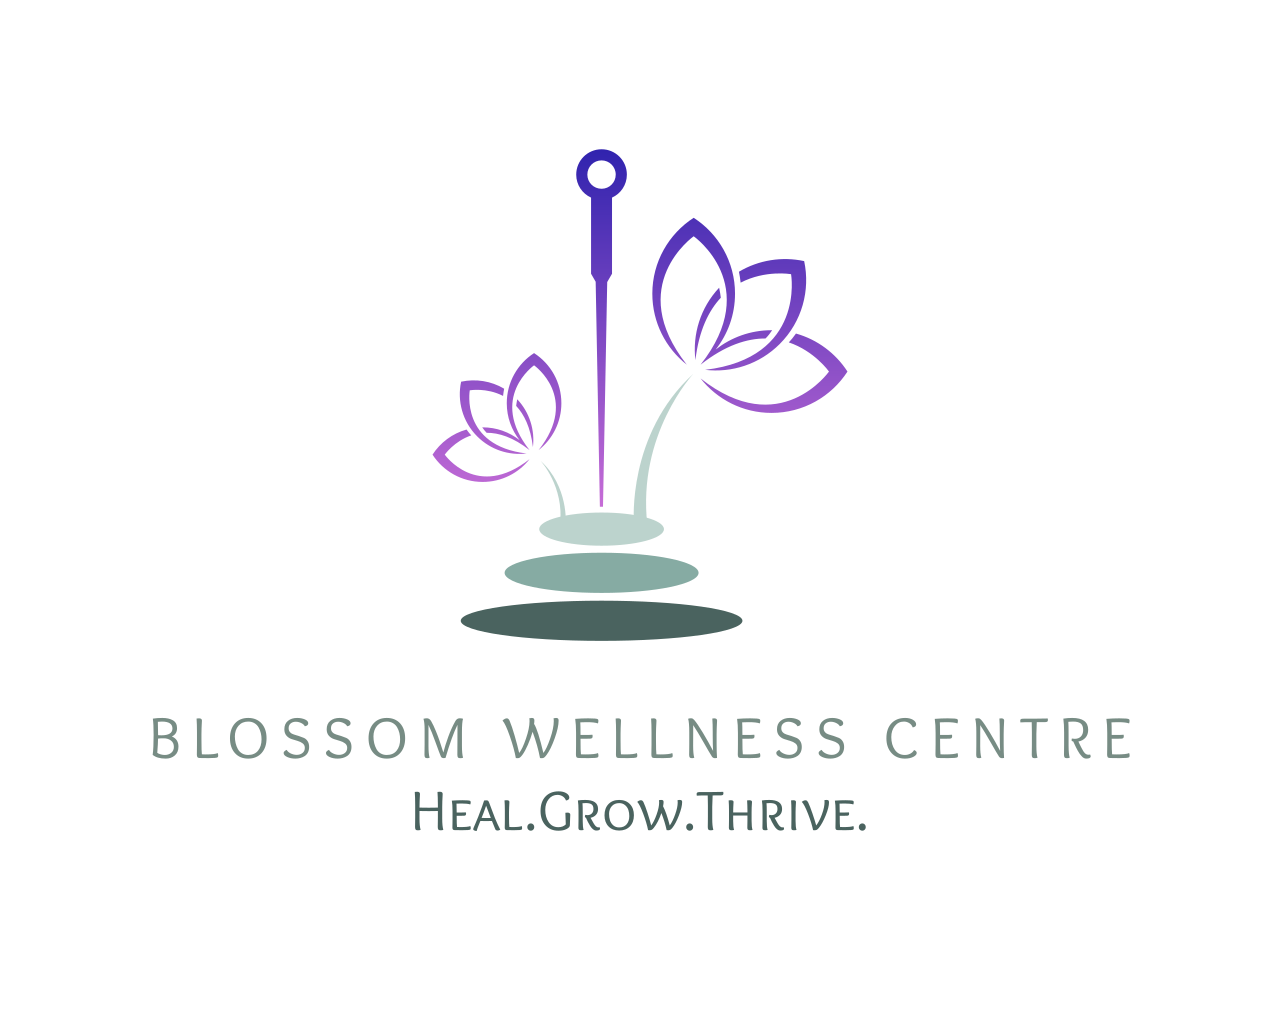 Blossom Wellness Centre